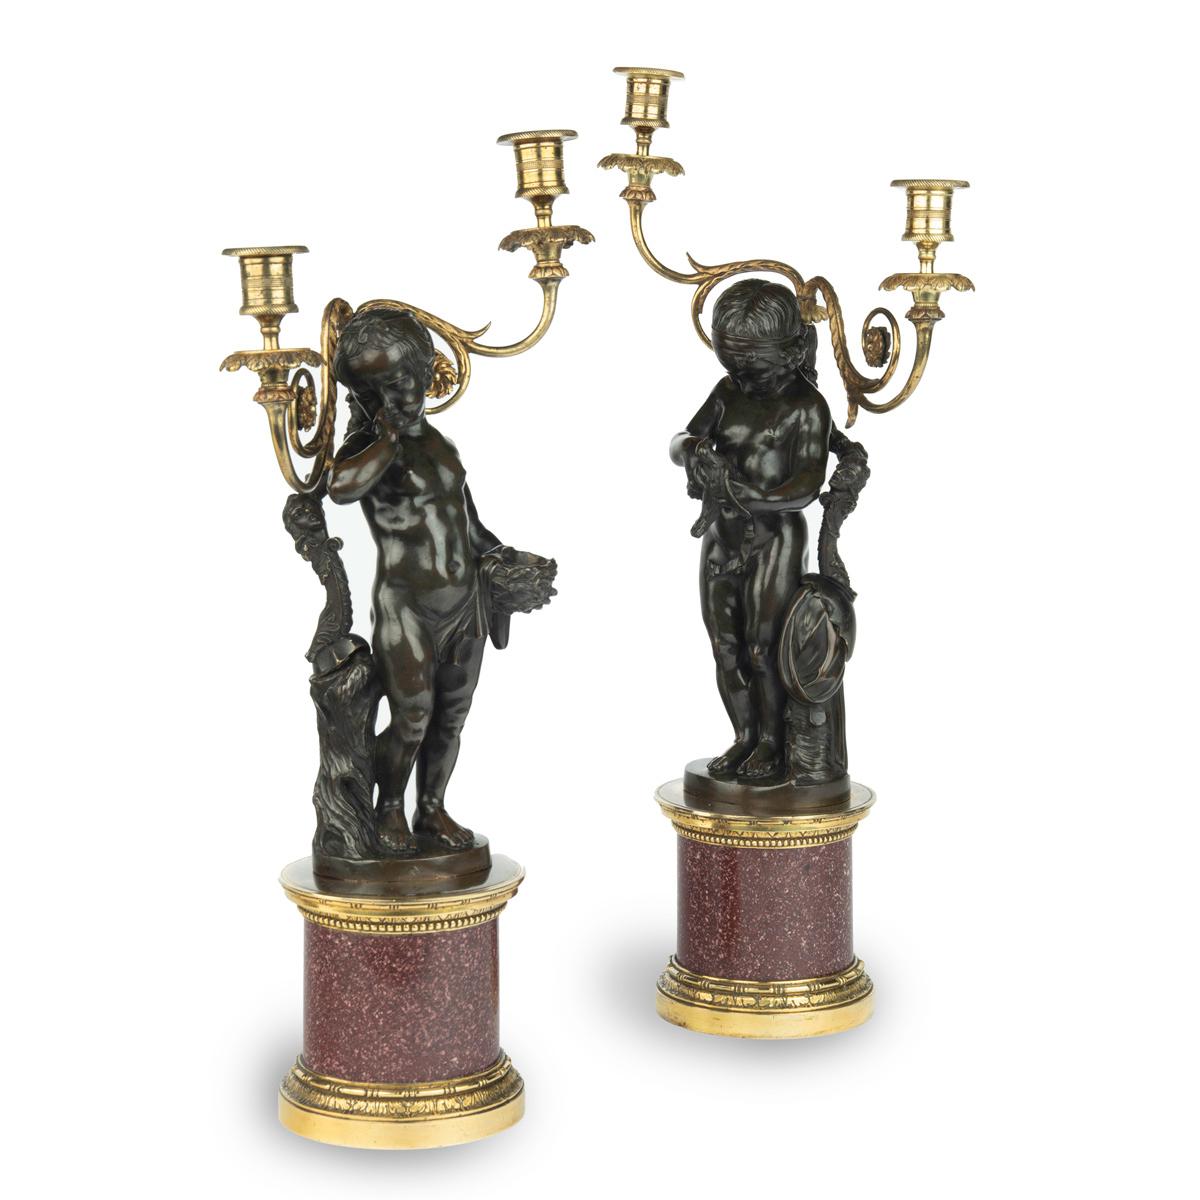 Ein Paar ägyptischer Porphyr- und Bronzeleuchter nach Charles-Antoine Bridan, jeweils bestehend aus einer Bronzefigur und zwei Kerzenzweigen auf einem zylindrischen Porphyrsockel mit Ormolu-Beschlägen. Der eine zeigt die Figur eines jungen Mädchens,